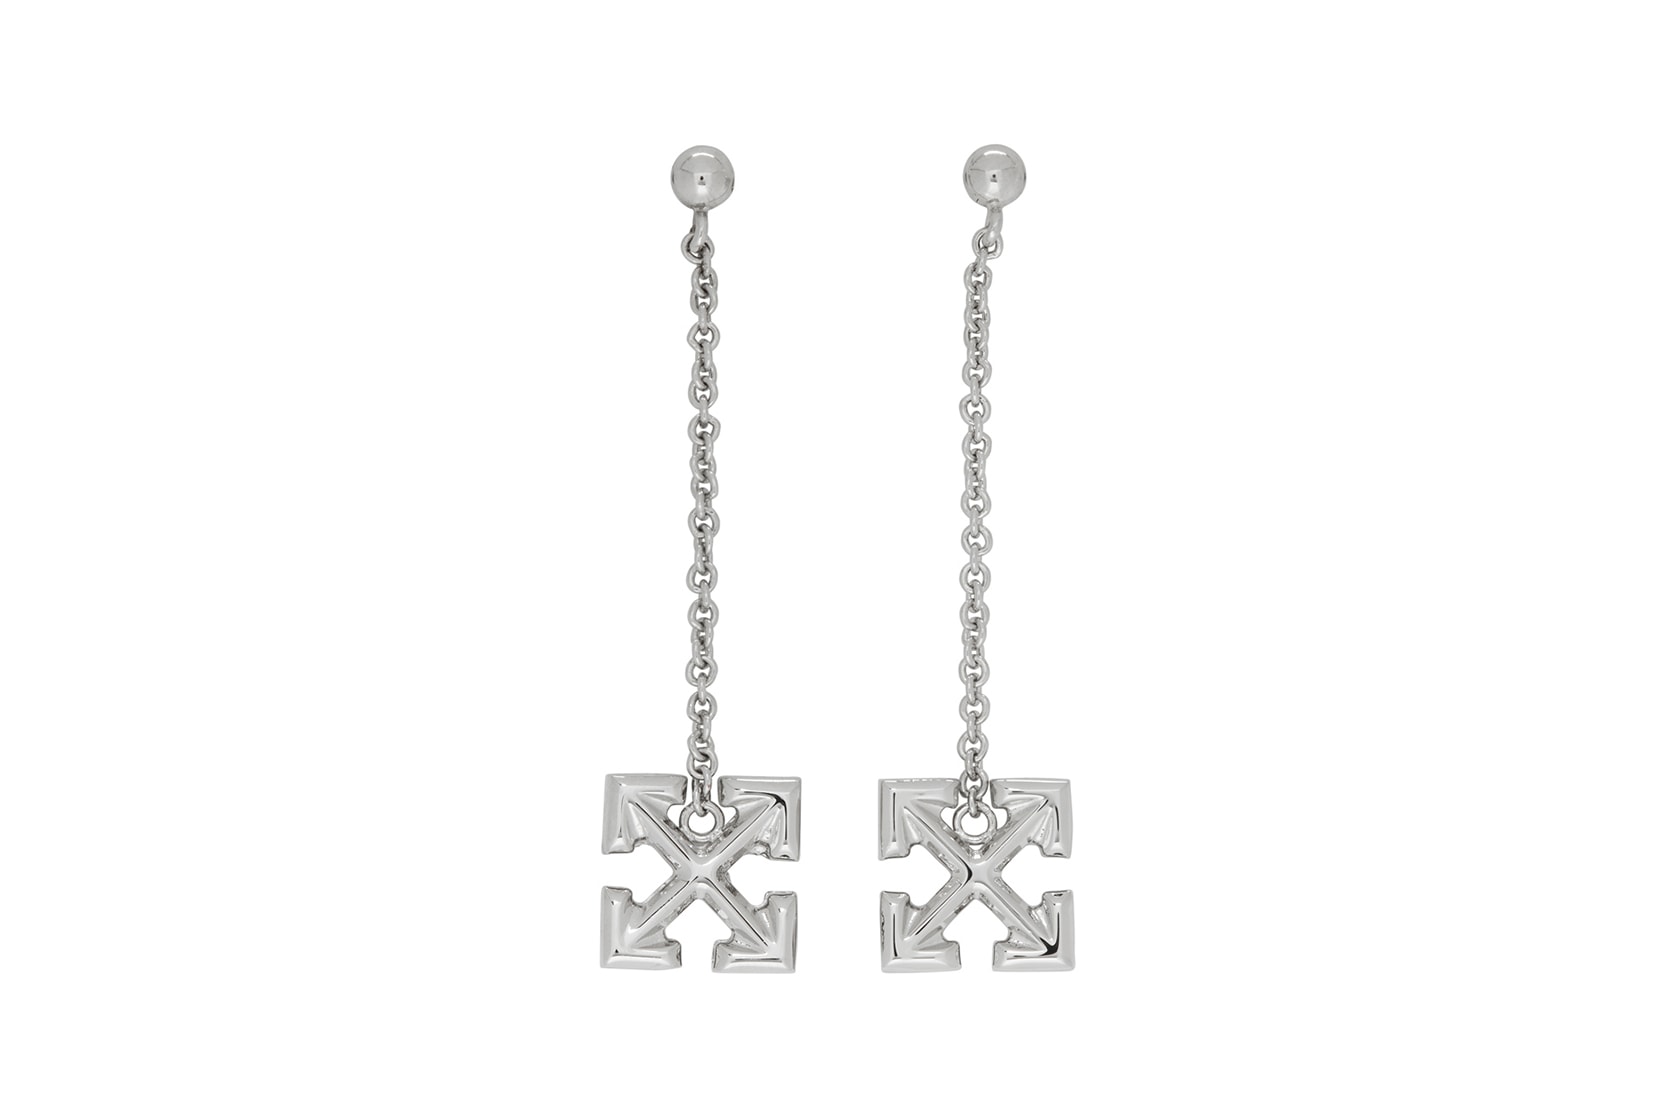 off-white earrings jewelry arrow silver